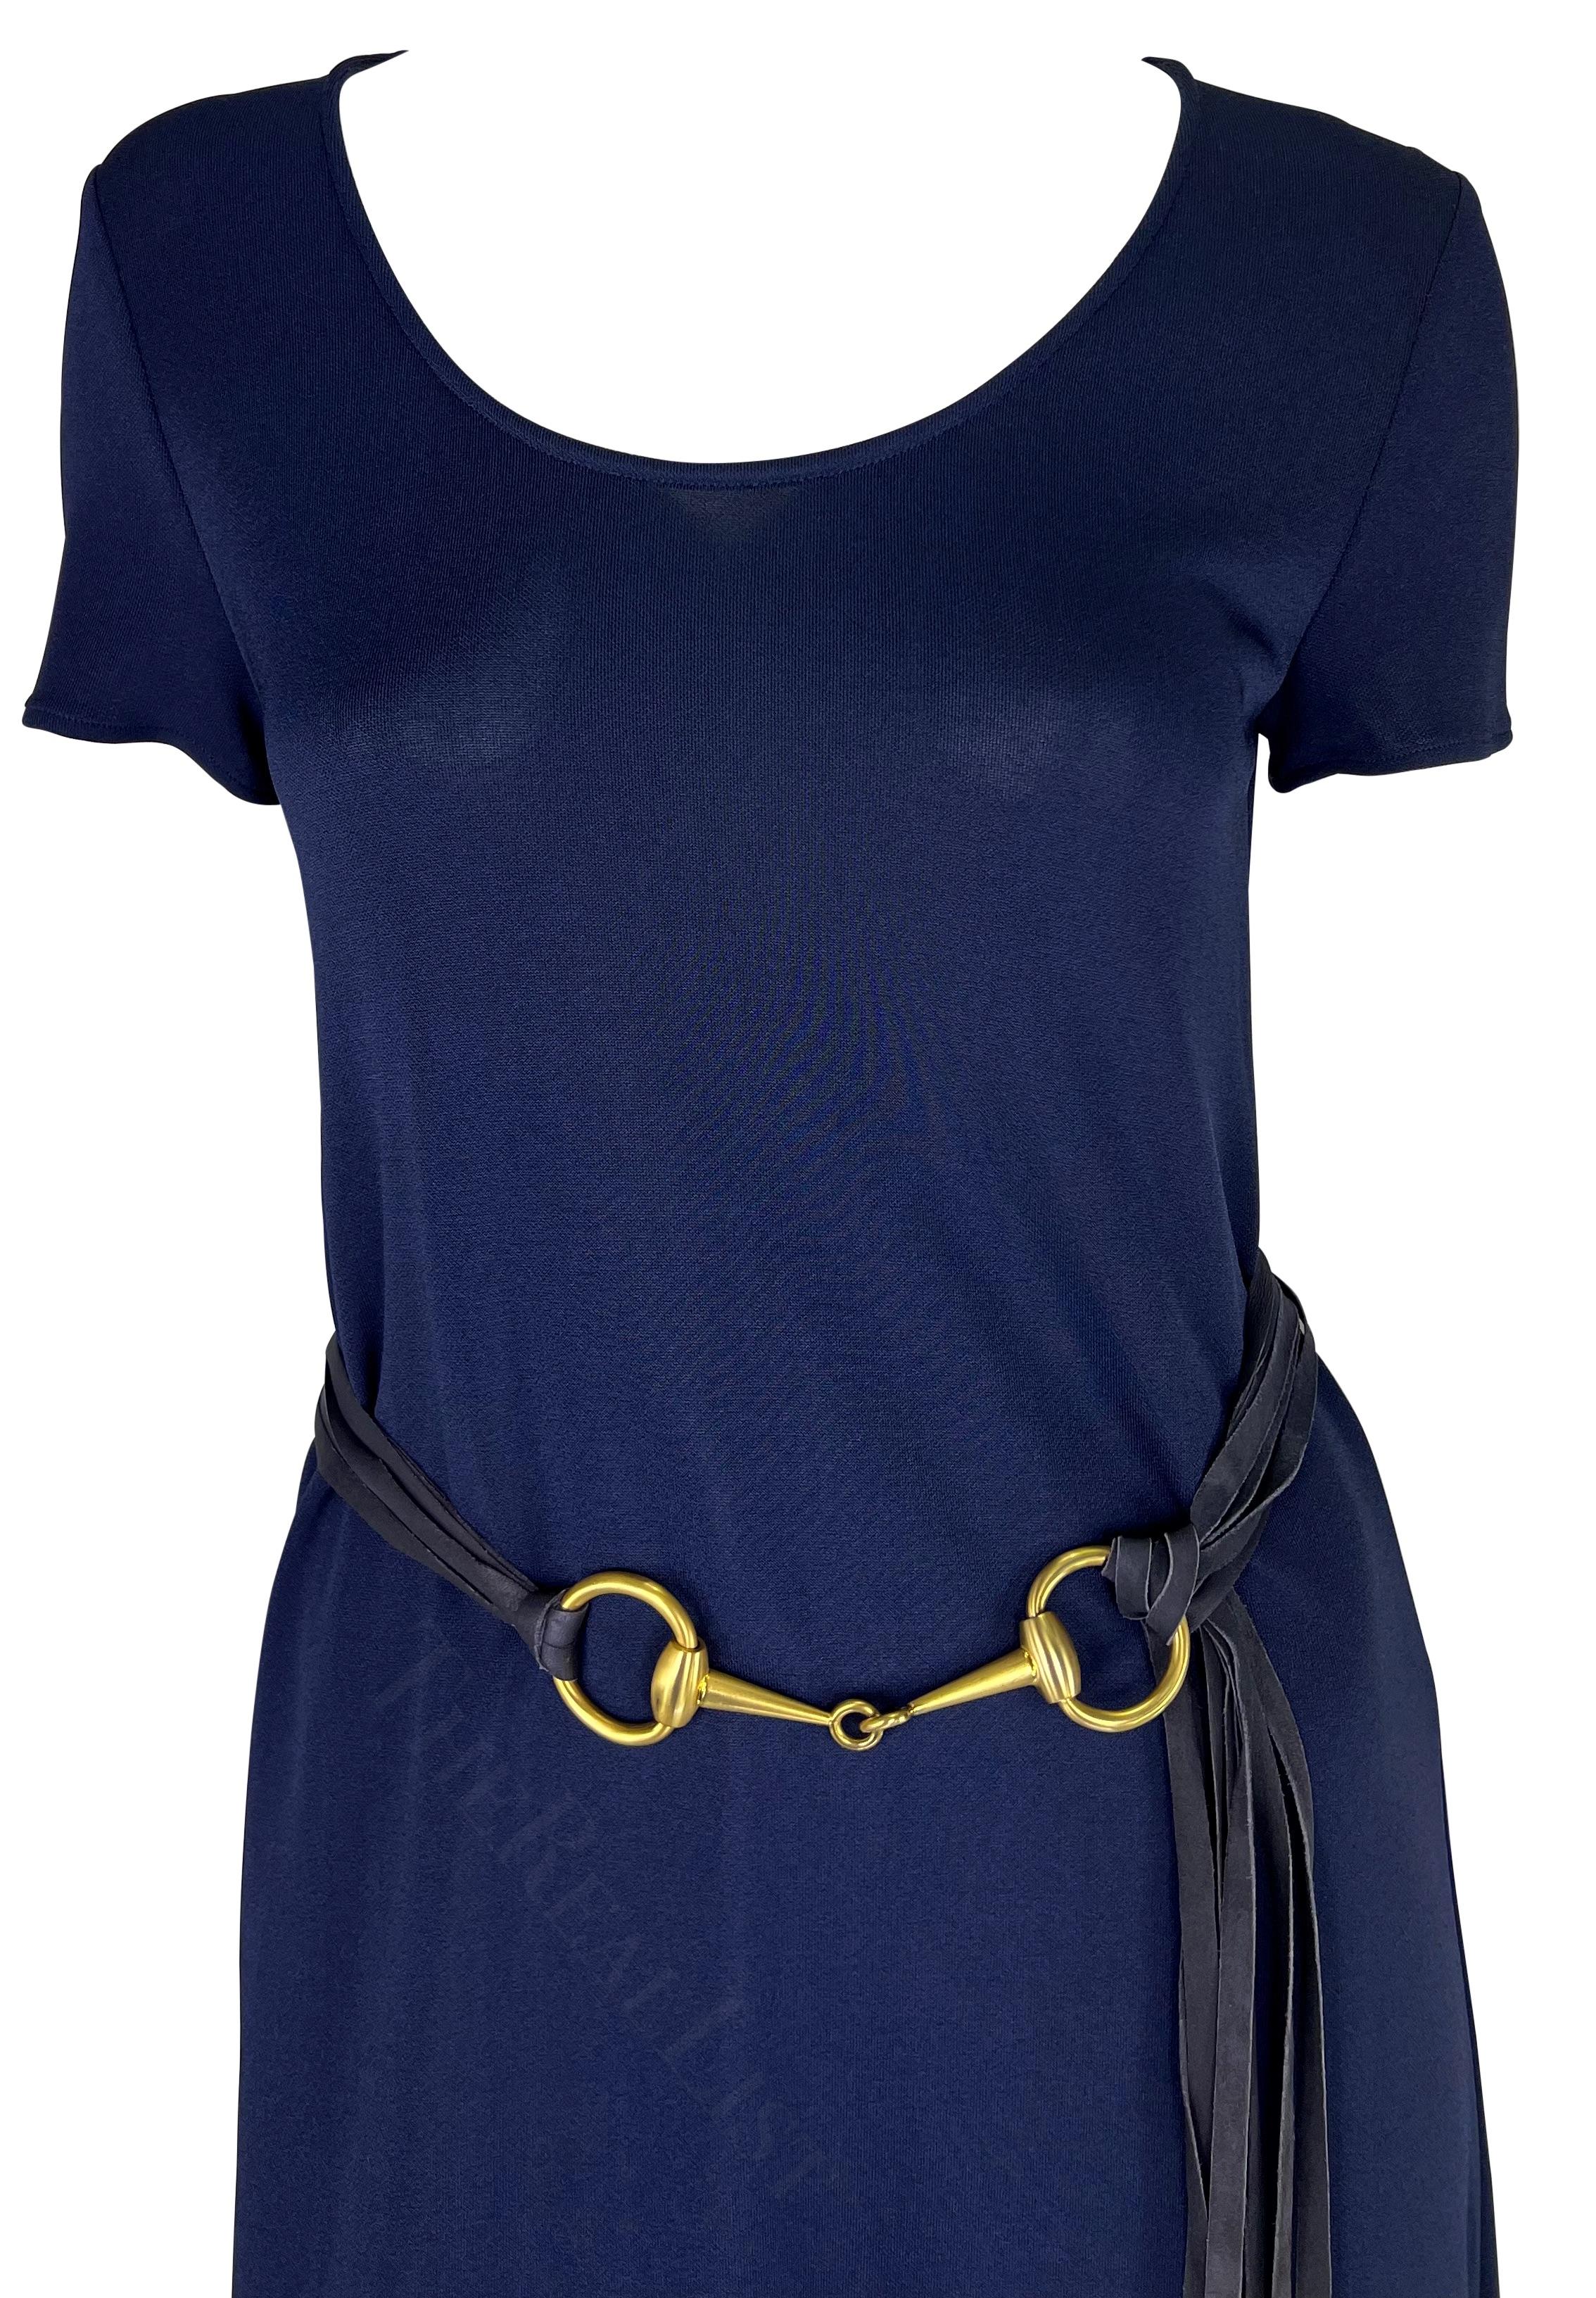 Wir präsentieren ein wunderschönes navyfarbenes Strickkleid von Gucci. Dieses Kleid aus der Frühjahr/Sommer-Kollektion 1994 hat kurze Ärmel, einen Rundhalsausschnitt und ist mit einem großen, passenden goldfarbenen Pferdegebiss-Gürtel versehen. Der